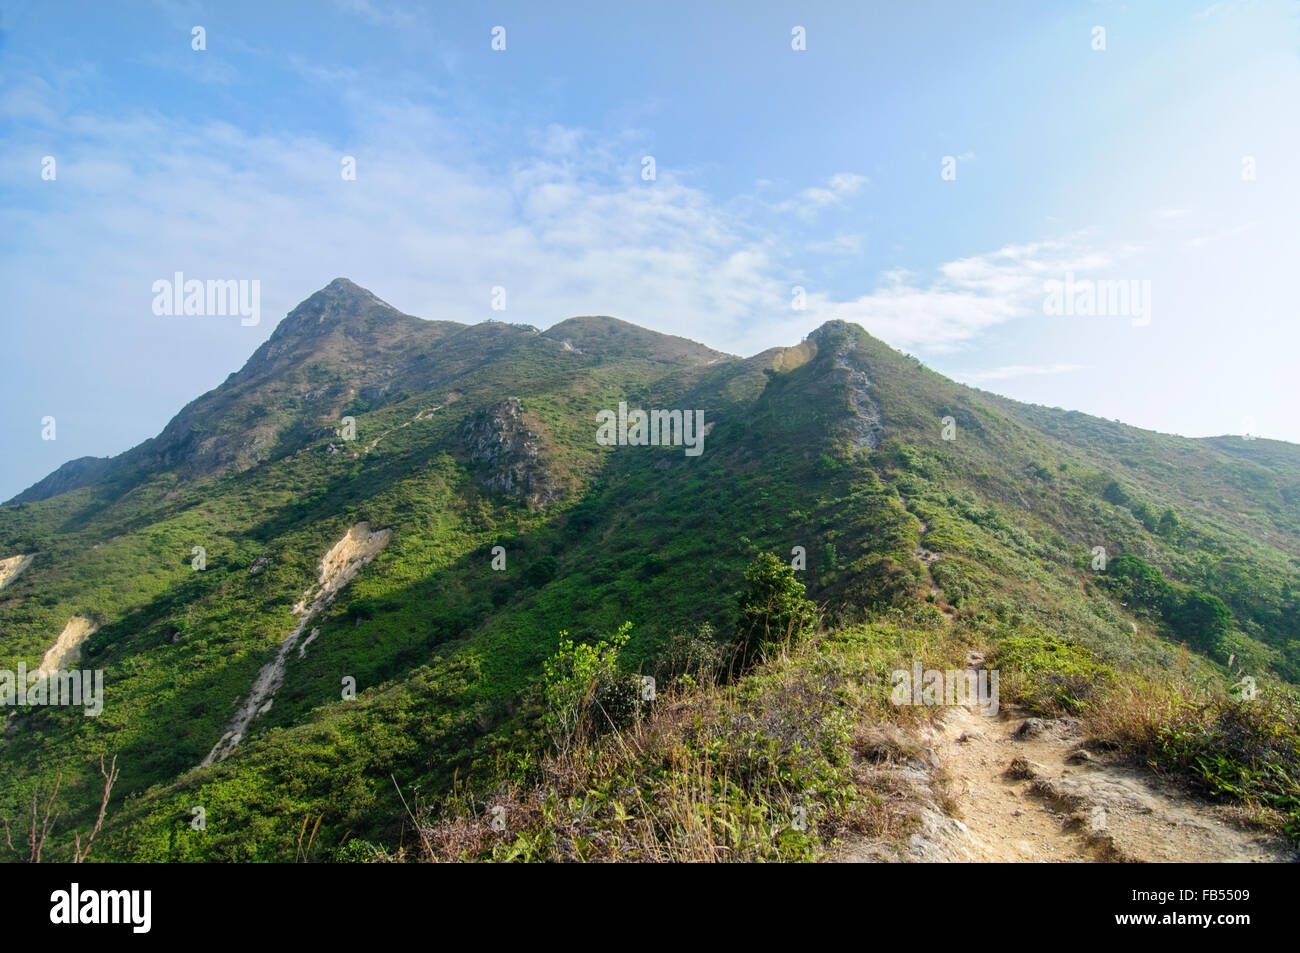 The summit of Sharp Peak, Sai Kung, Hong Kong Stock Photo